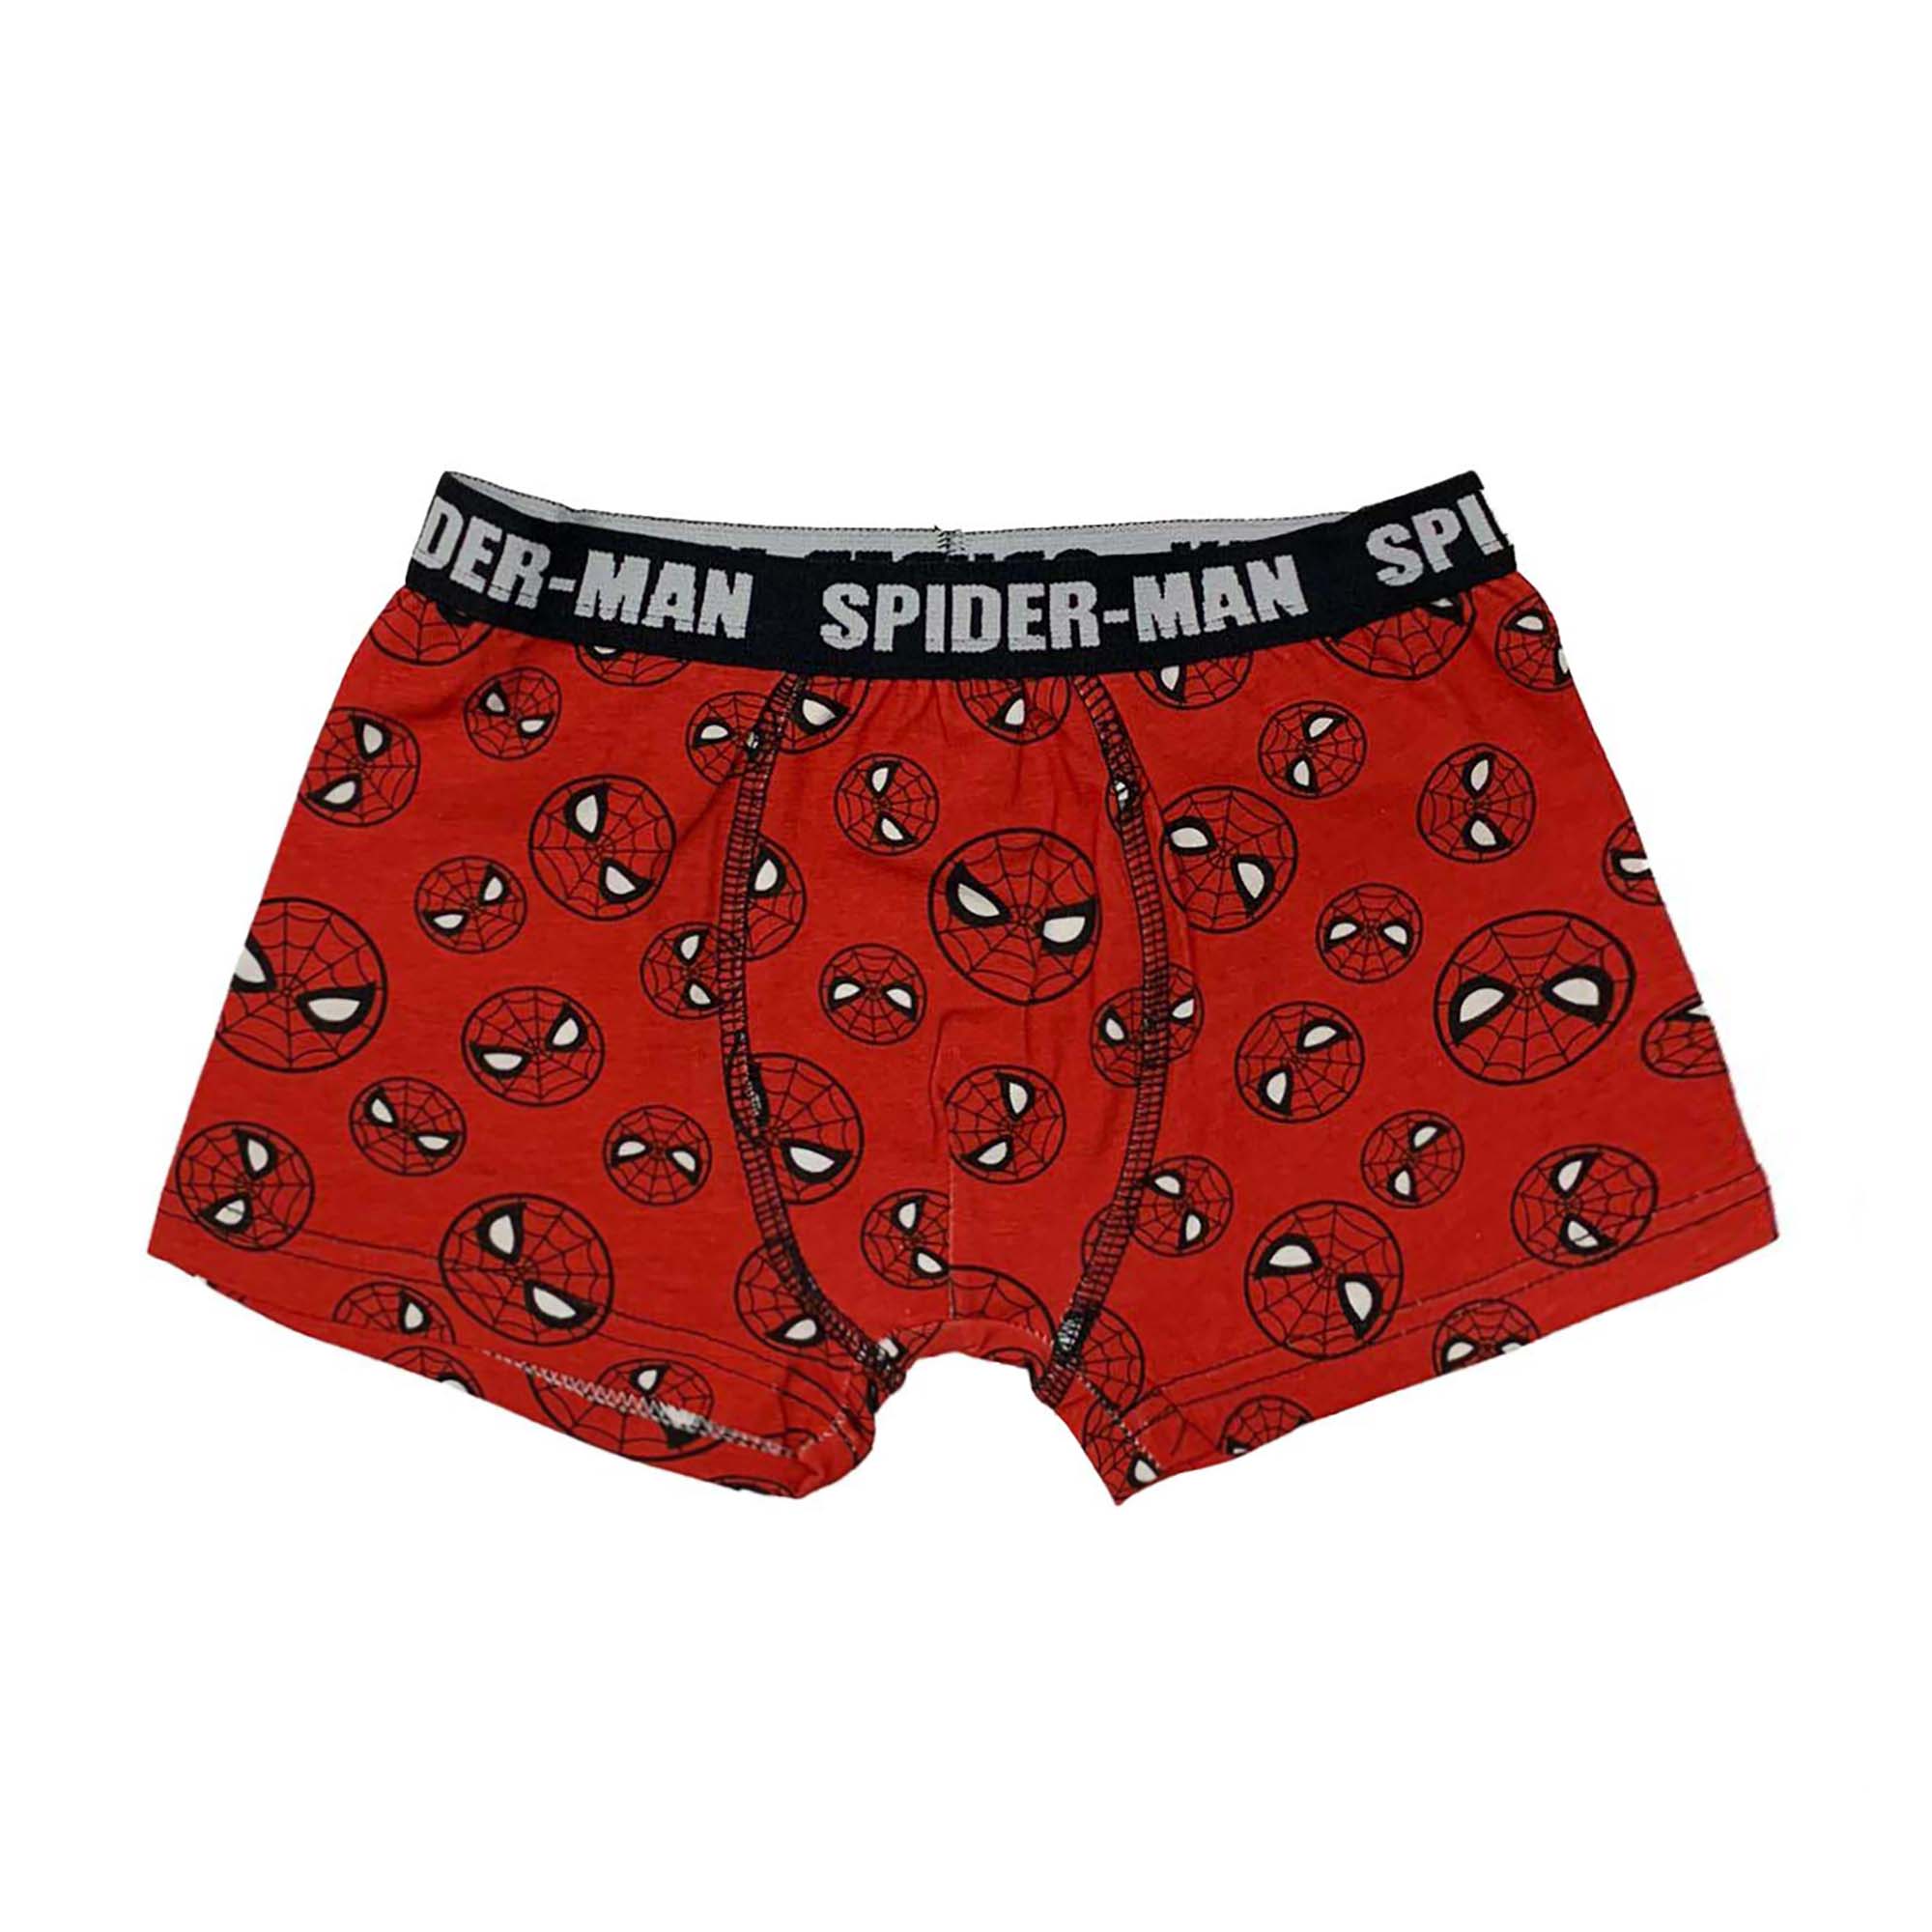 Boxer Marvel Spiderman bambino ragazzo ufficiale shorties mutandina intimo 4057